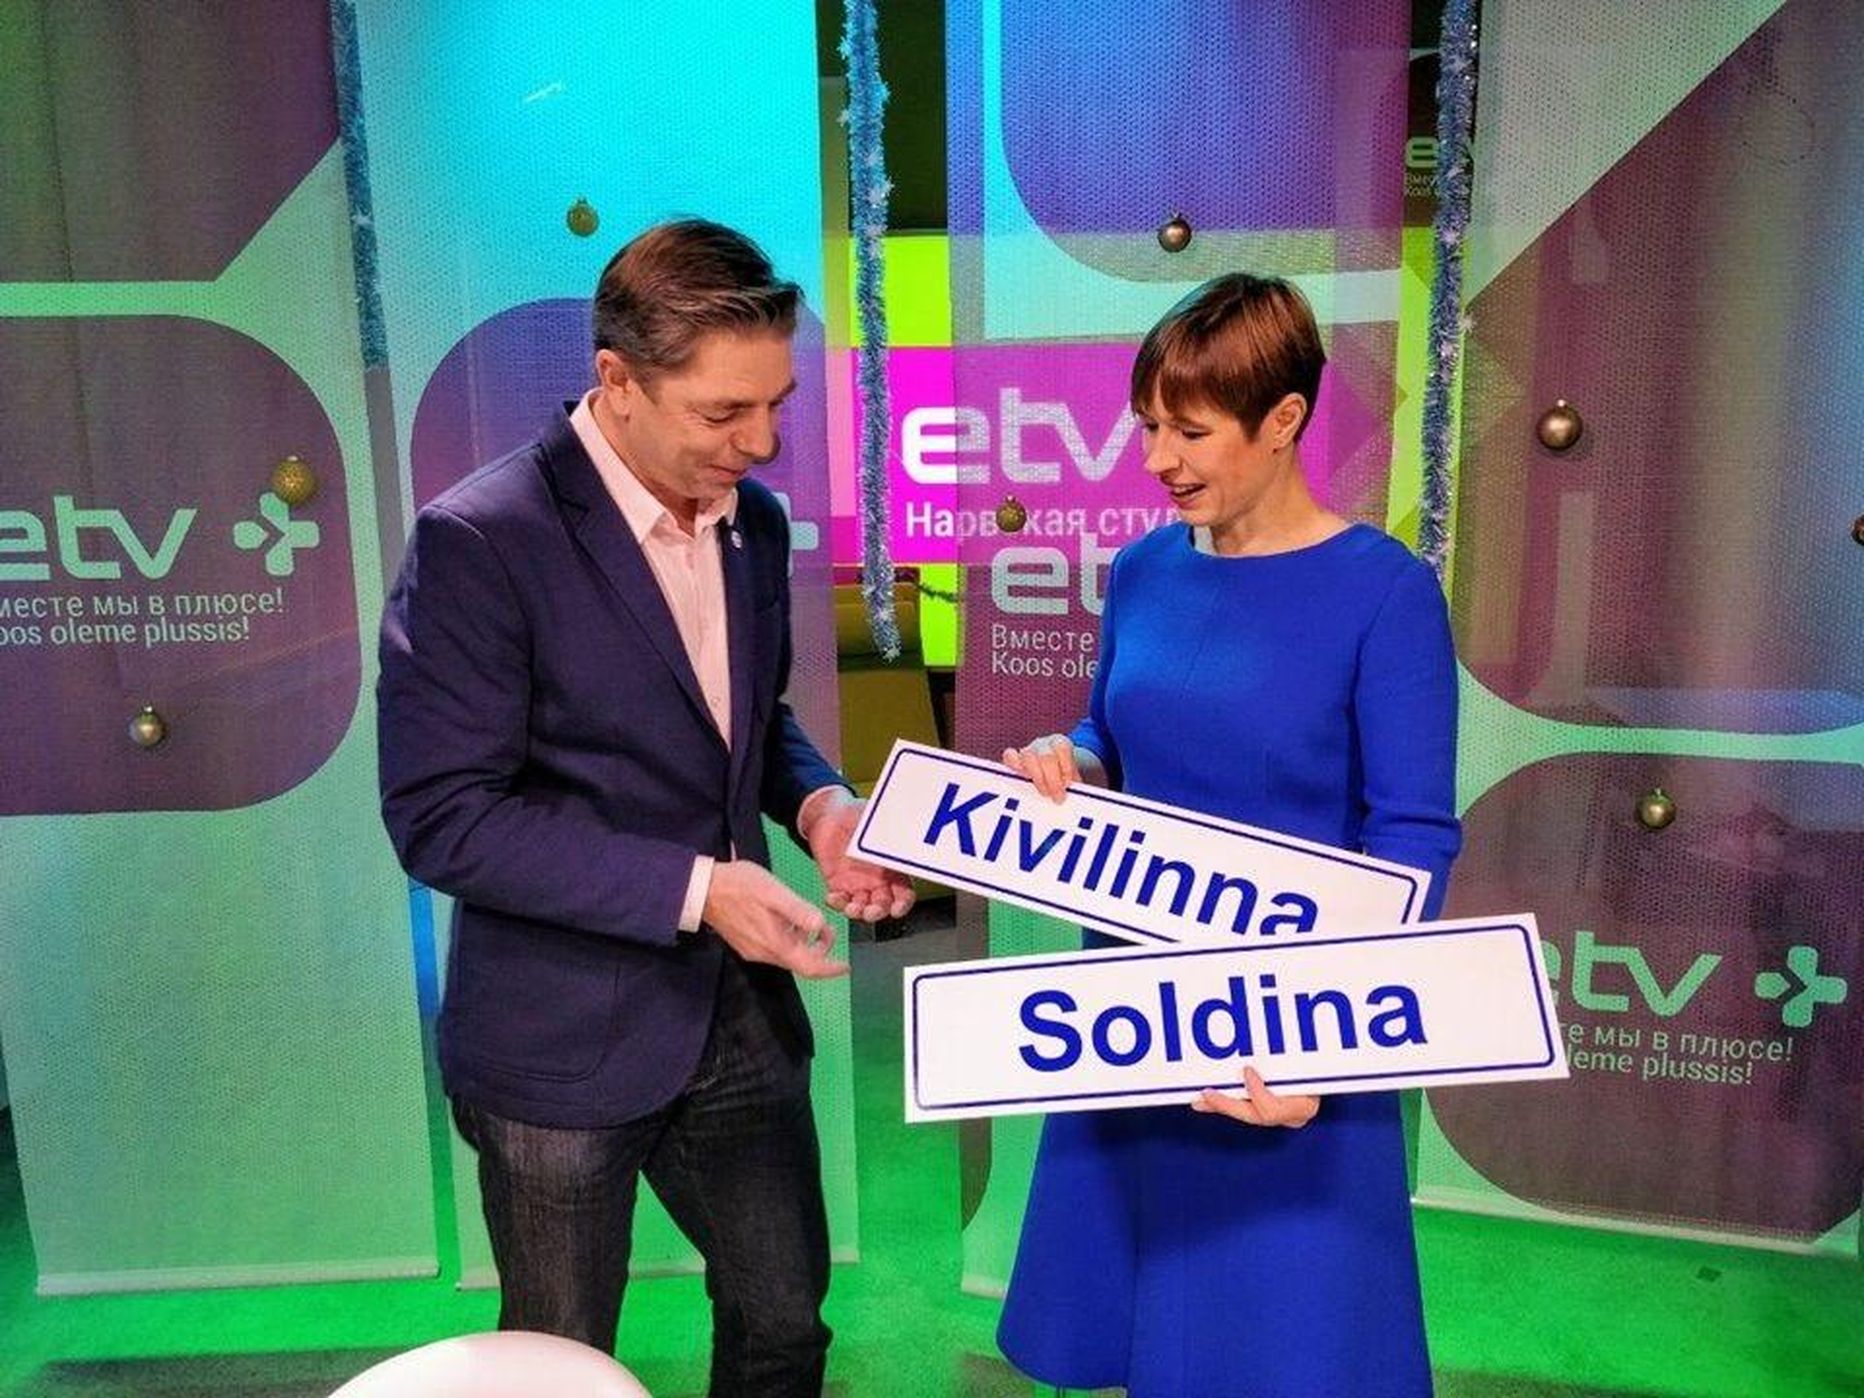 President Kersti Kaljulaid kinkis 2018. aasta novembris ERRi Narva stuudios piirilinnale uued tänavasildid, mis pole paraku senini kasutust leidnud.